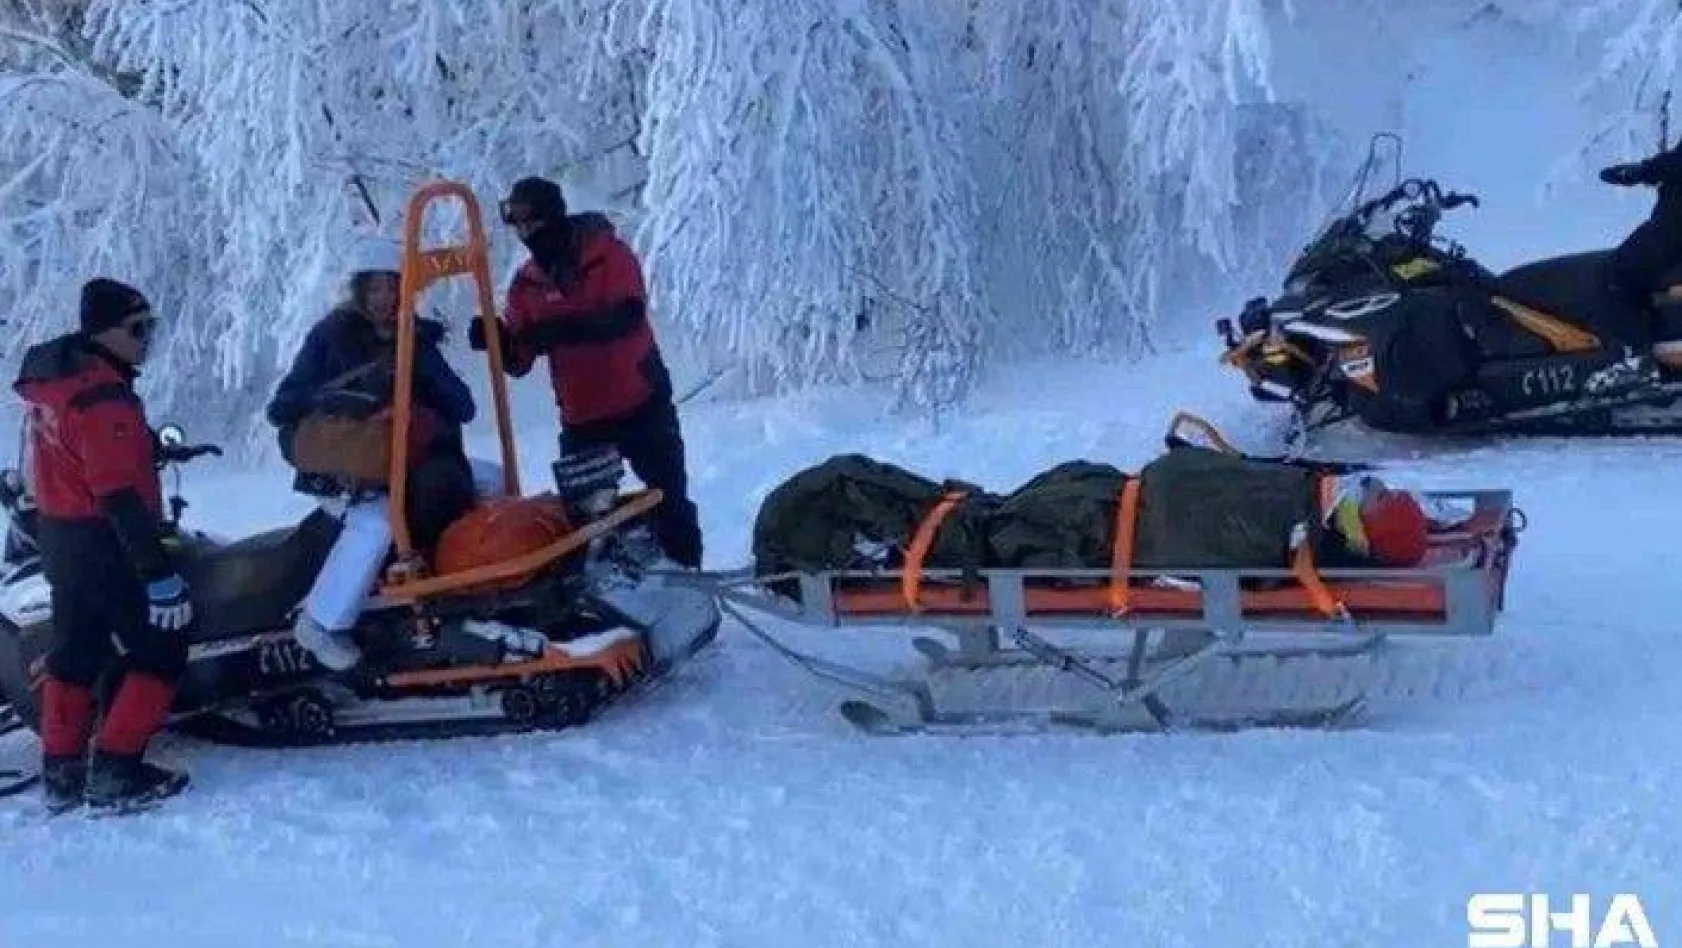 Kayak yaparken düşen vatandaş paletli kızak ile kurtarıldı